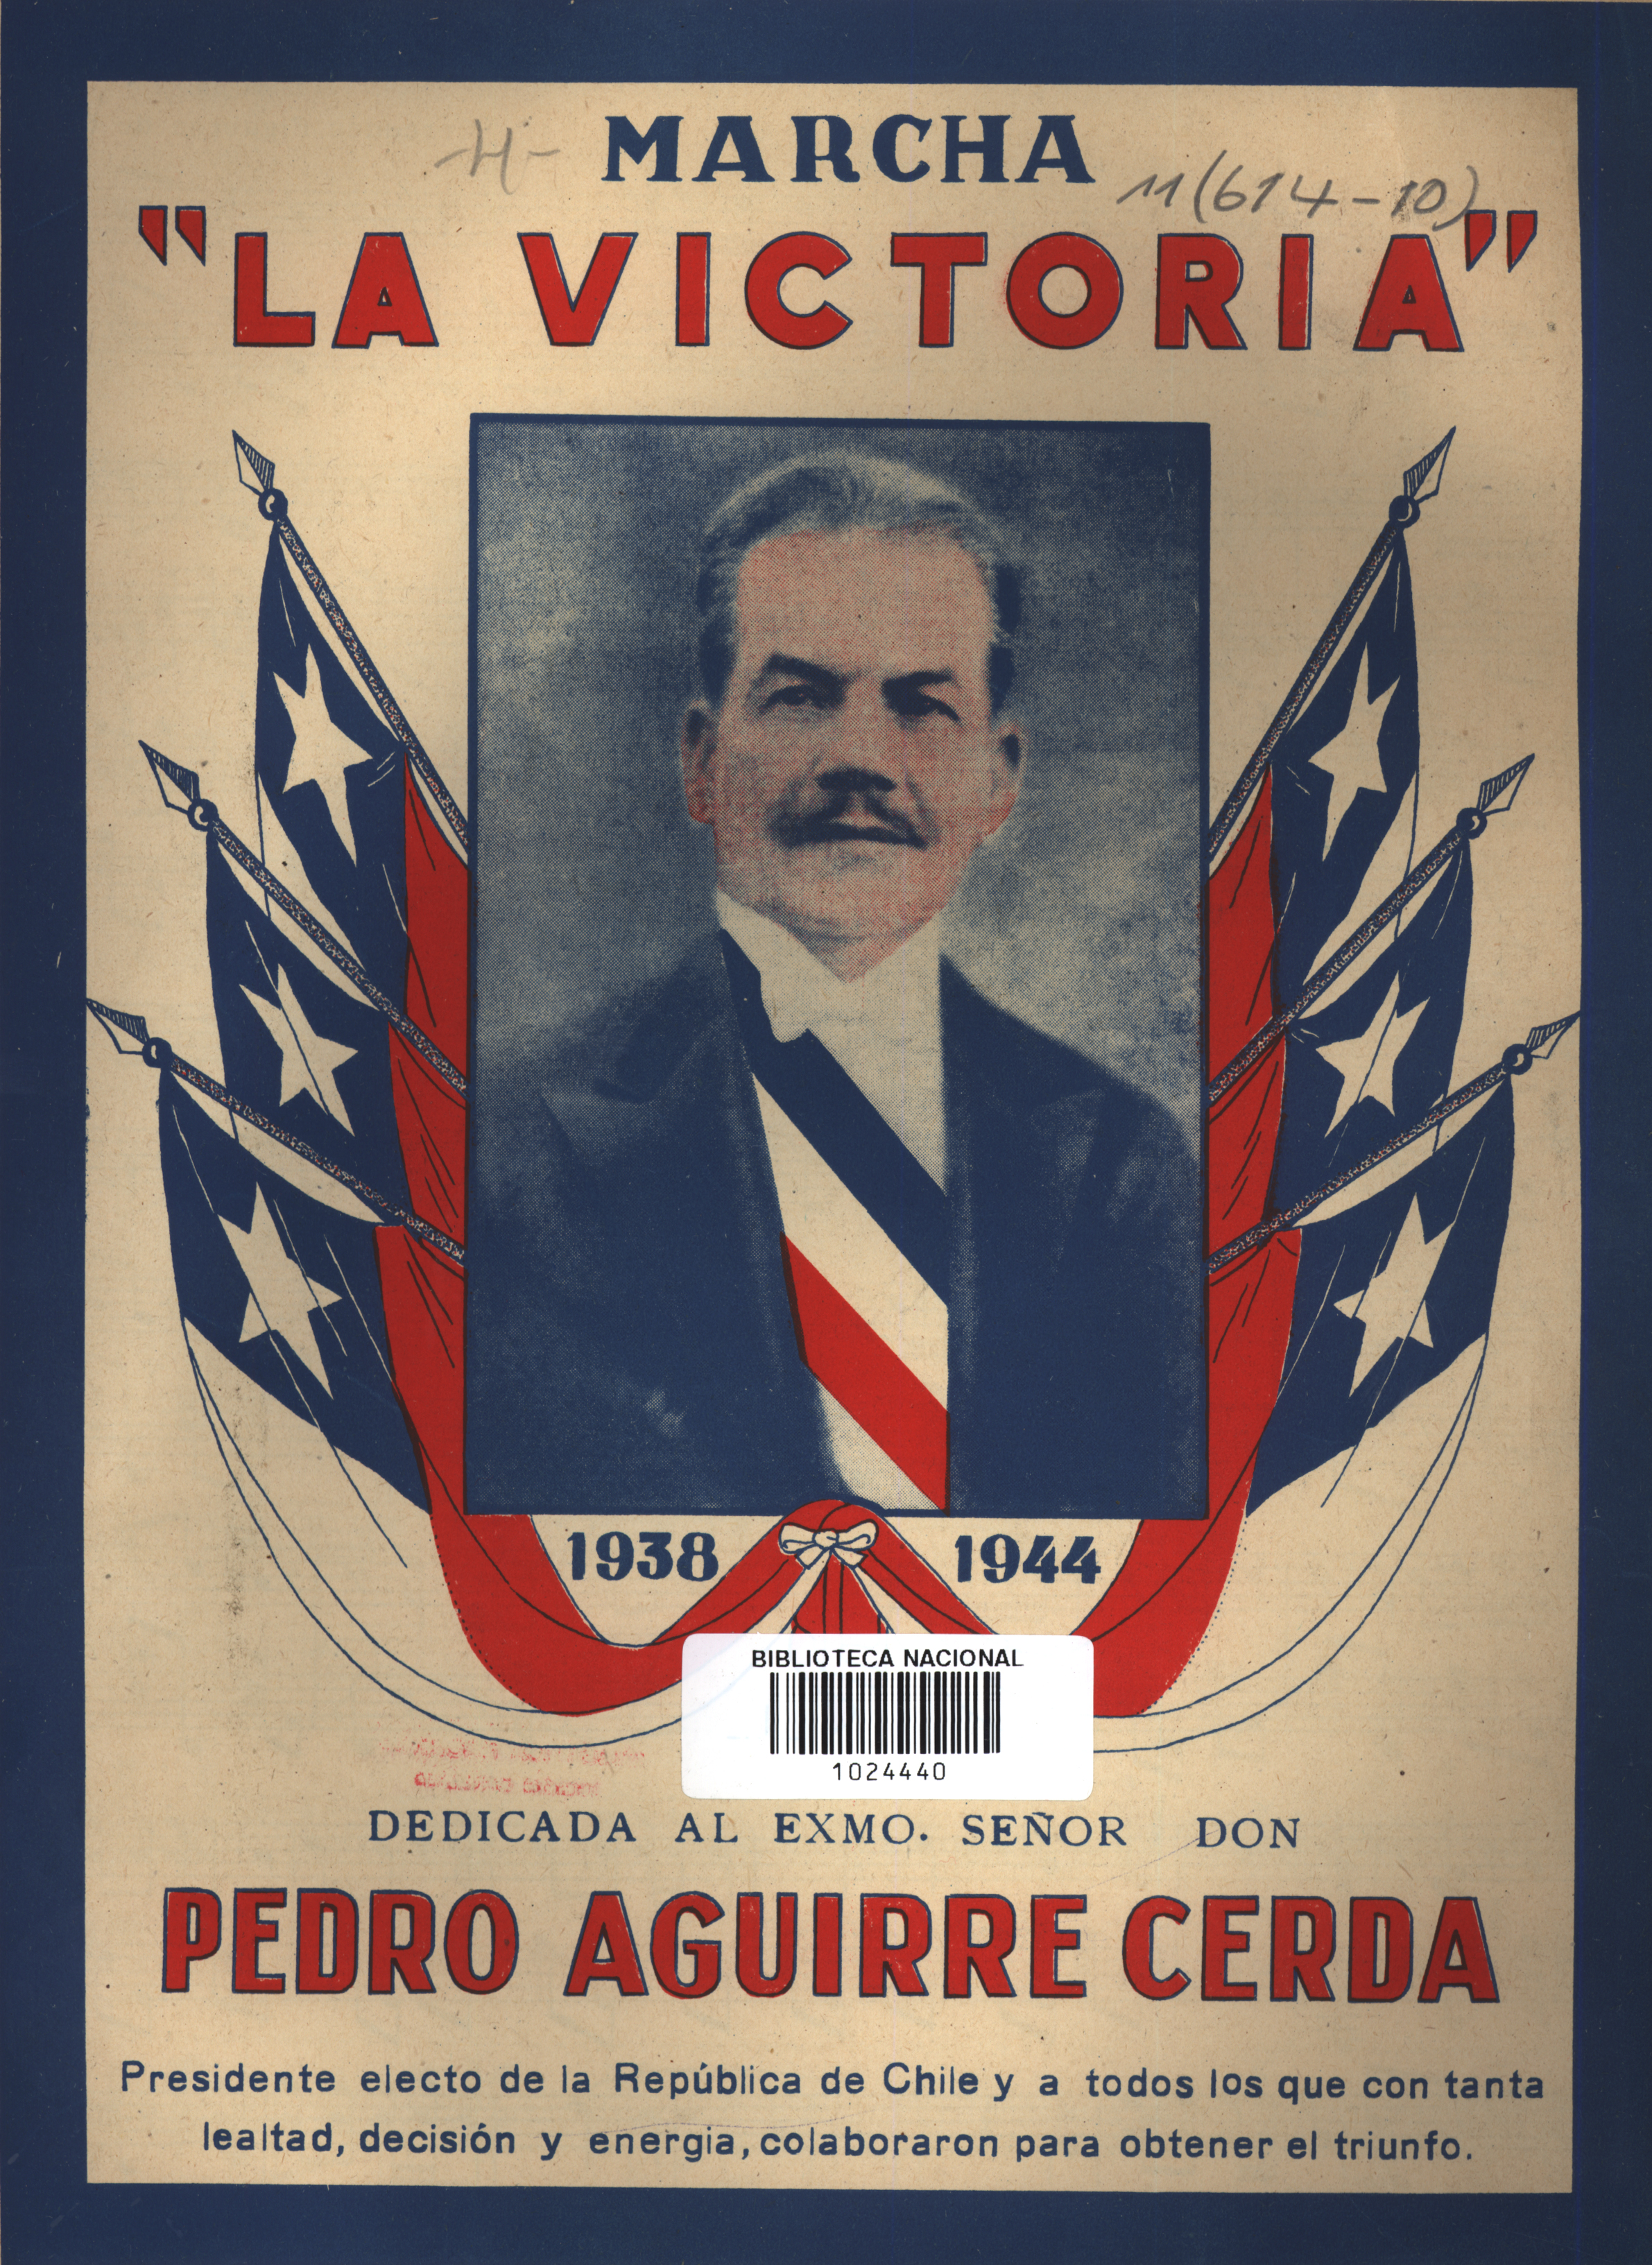 Marcha La Victoria : dedicada a Pedro Aguirre Cerda, presidente electo de la República de Chile y a todos los que con tanta lealtad, decisión y energía colaboraron para obtener el triunfo